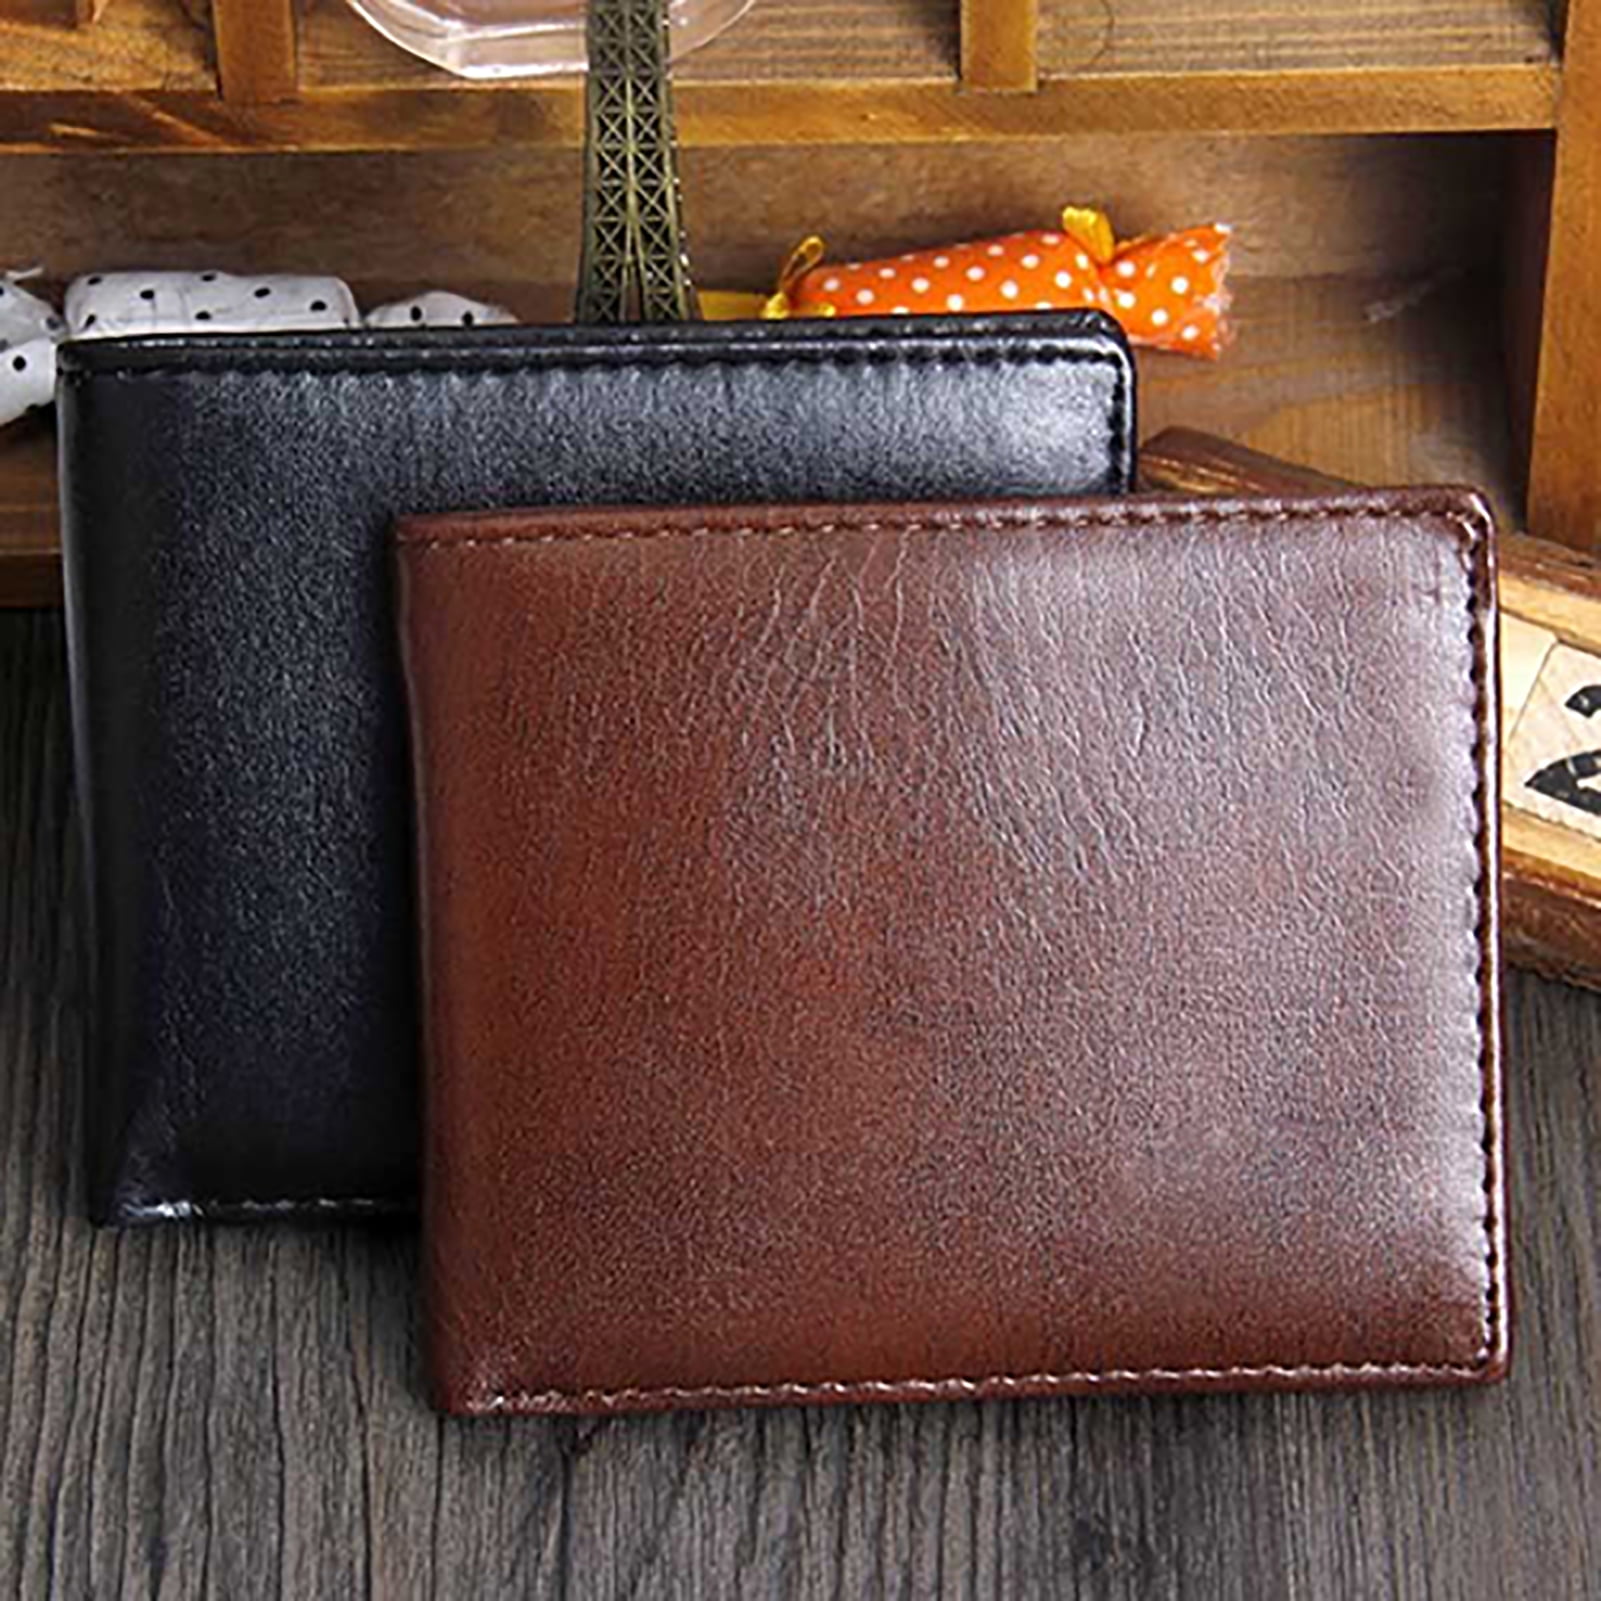 1X Black Men Business Leather Wallet Pocket Card Holder Clutch Bifold Slim Purse 